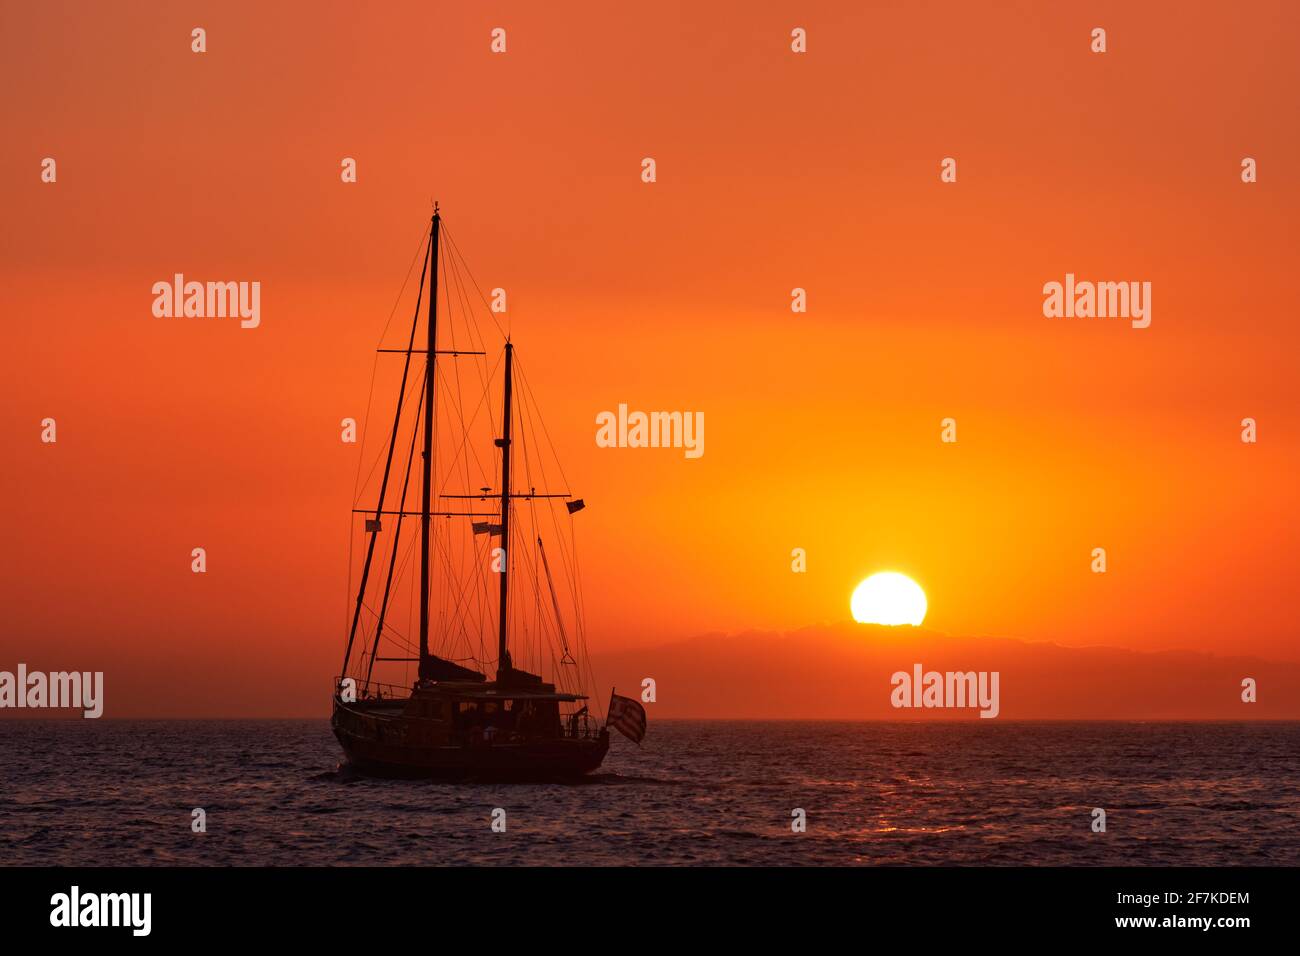 Silhouette eines Segelbootes mit Segeln gegen die Sonne bei Sonnenuntergang, Sonneneinstrahlung auf das Meer. Romantische Meereslandschaft. Urlaub Lifestyle Landschaft Stockfoto